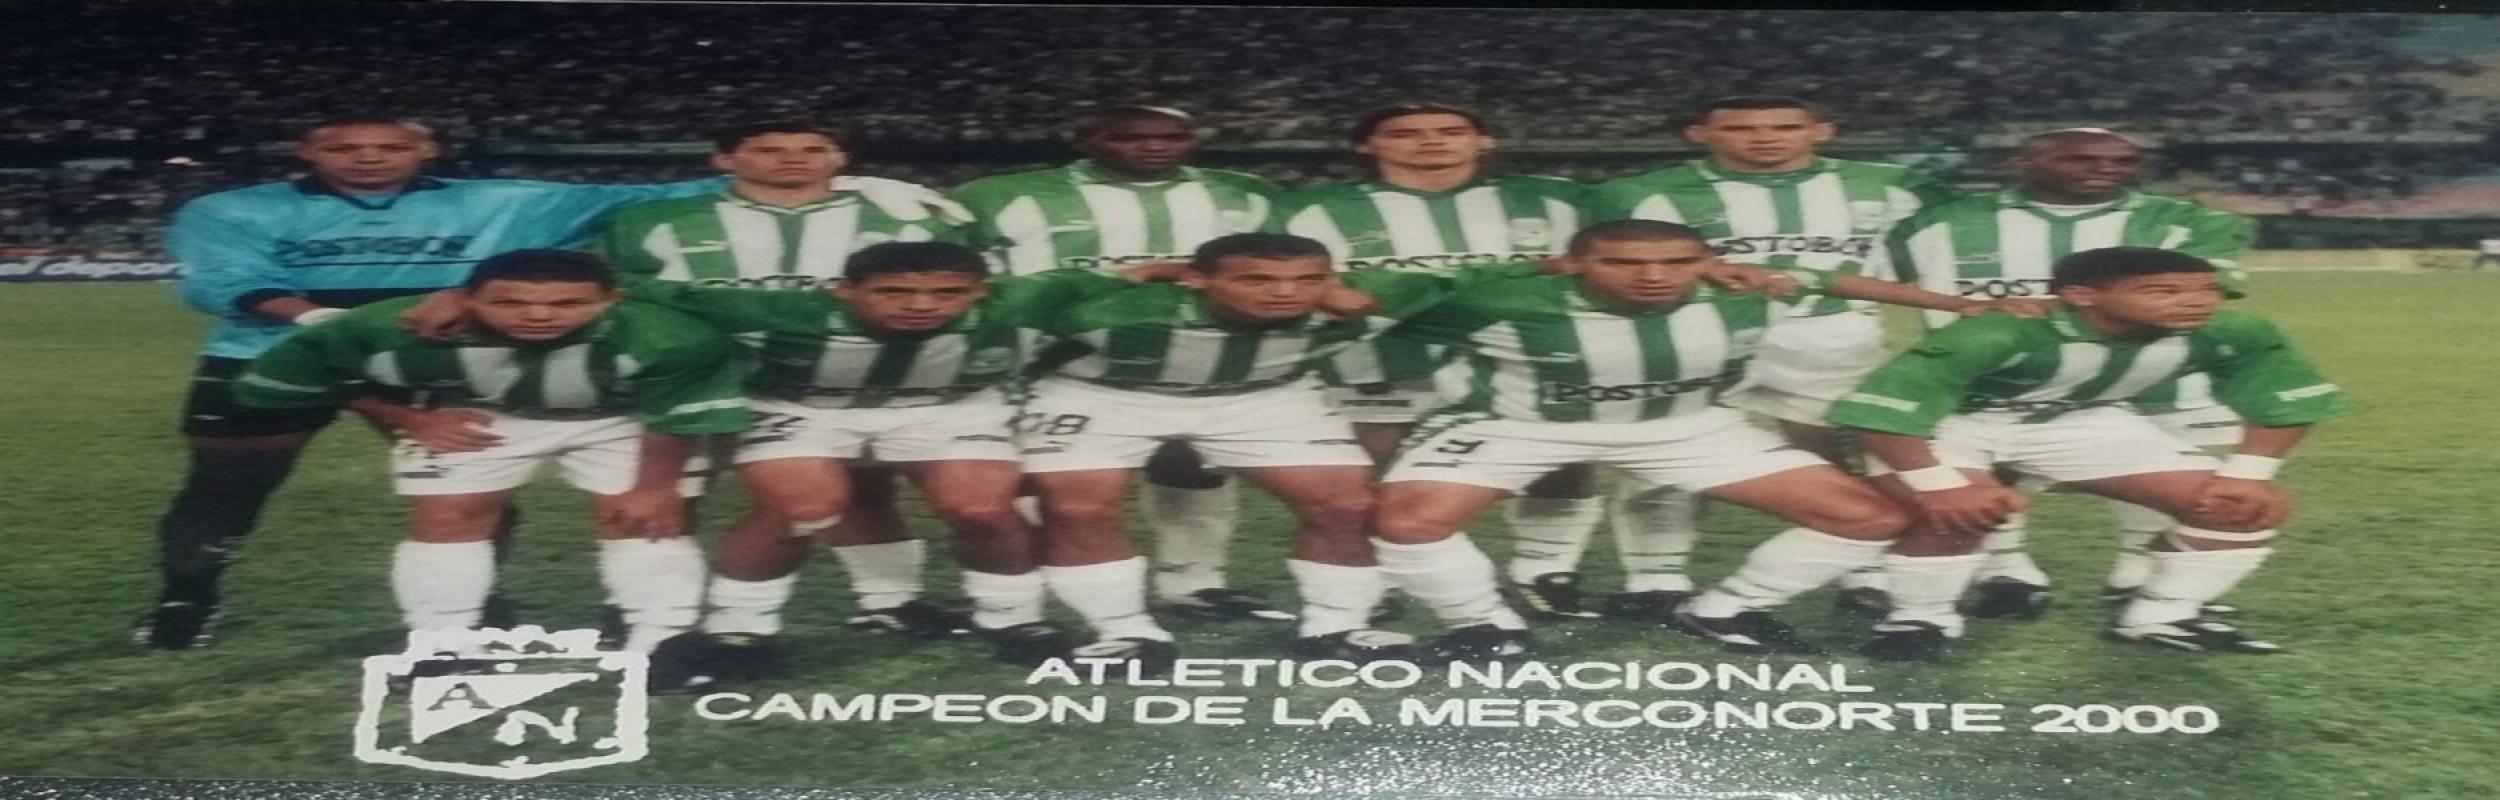 Ατλέτικο Νασιονάλ, Atlético Nacional